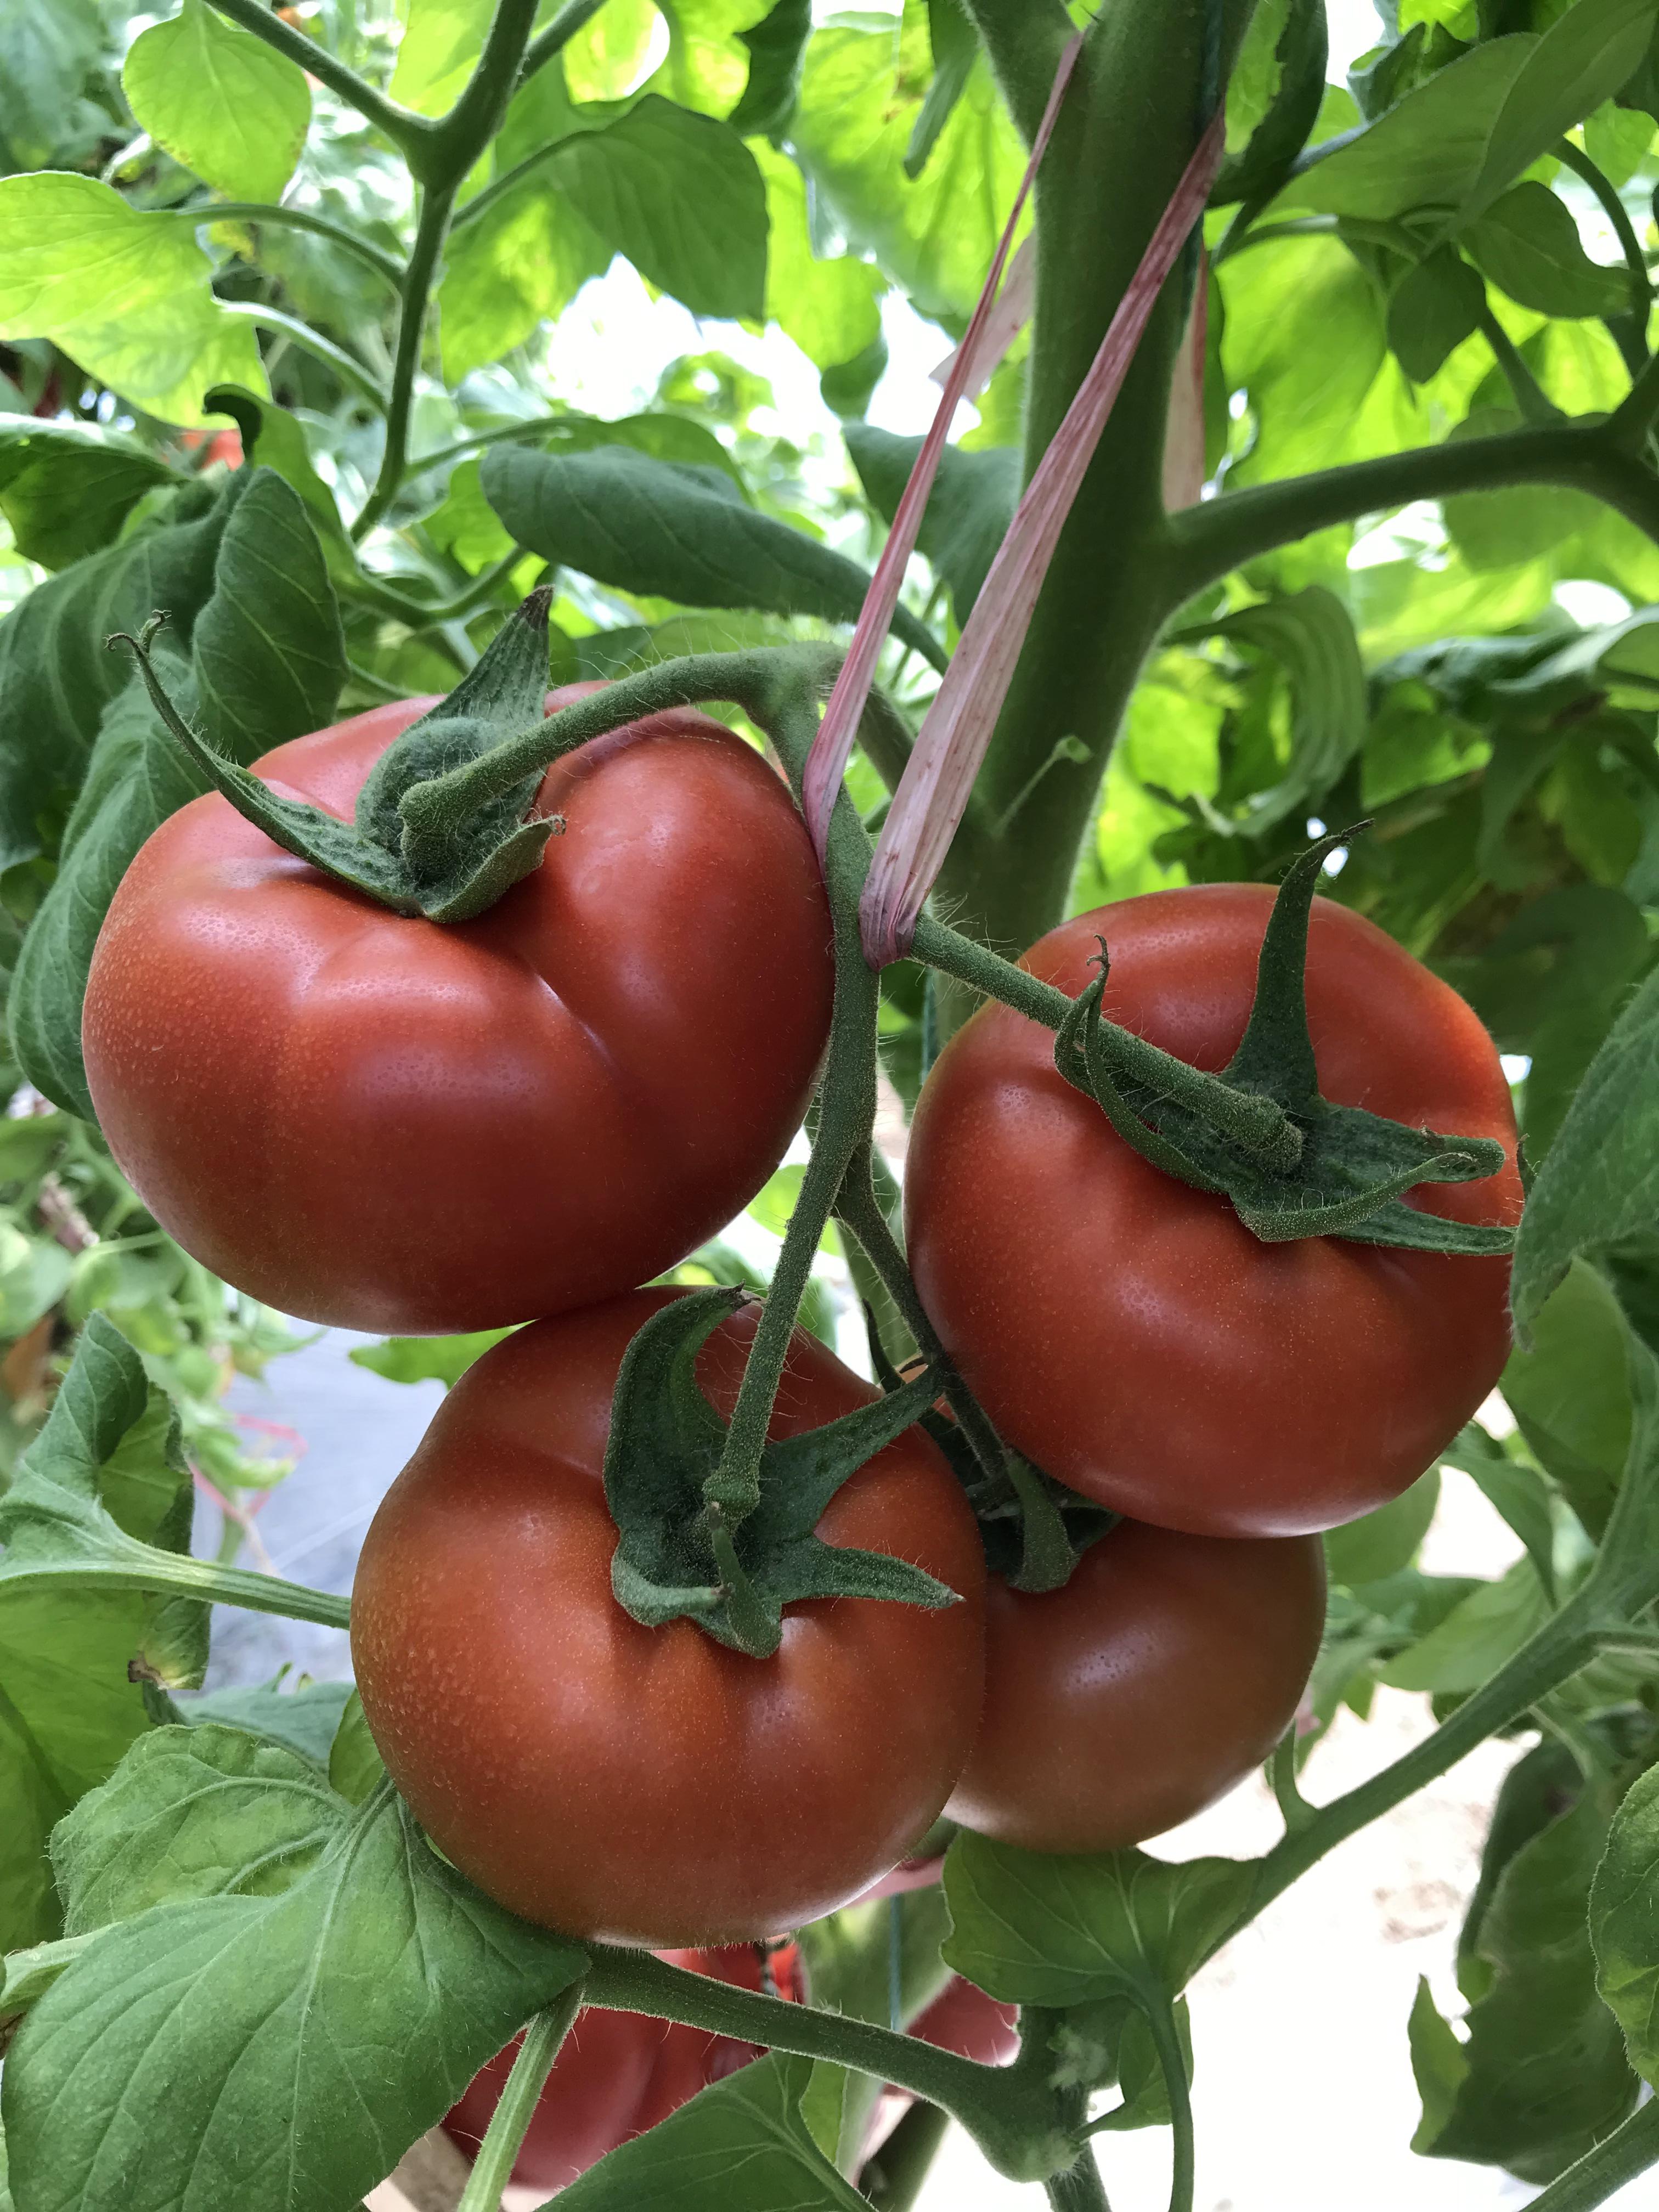 先正达奇达利红果番茄种子苗子  果实圆形深红色  单果重200克左右 思贝德  凯萨 瑞菲